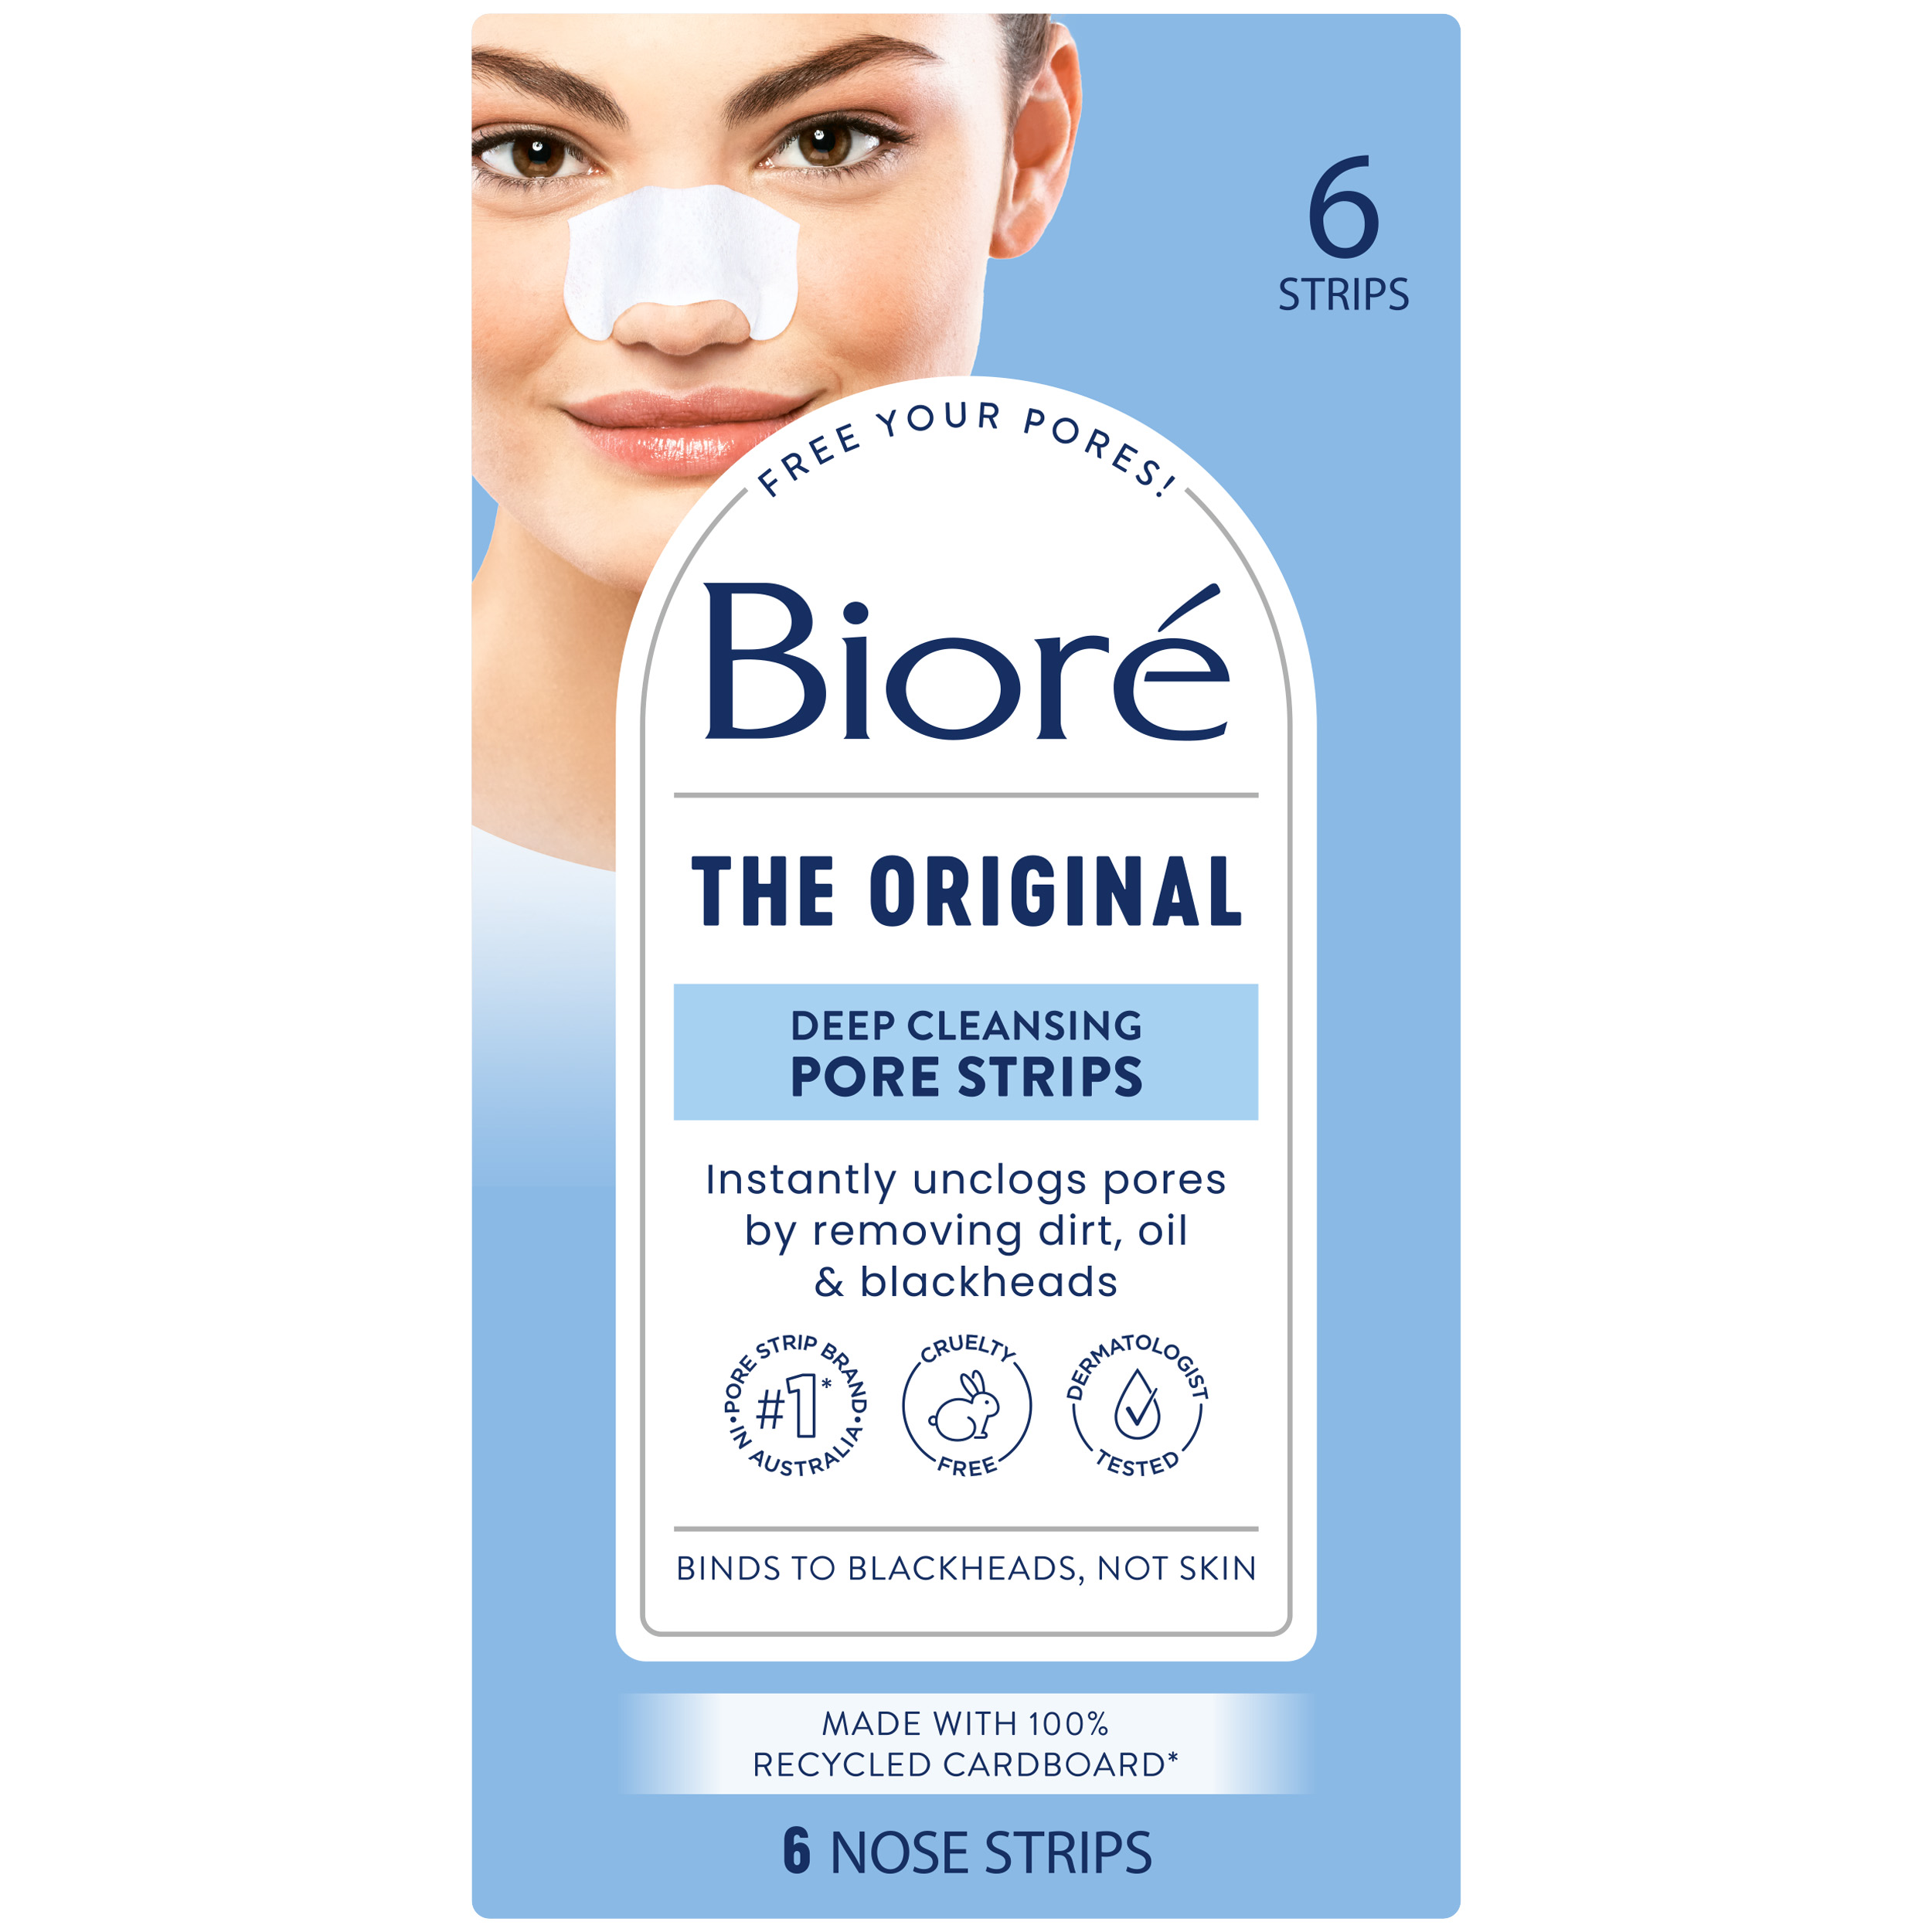 Bioré Deep Cleansing Pore Strips Reviews image